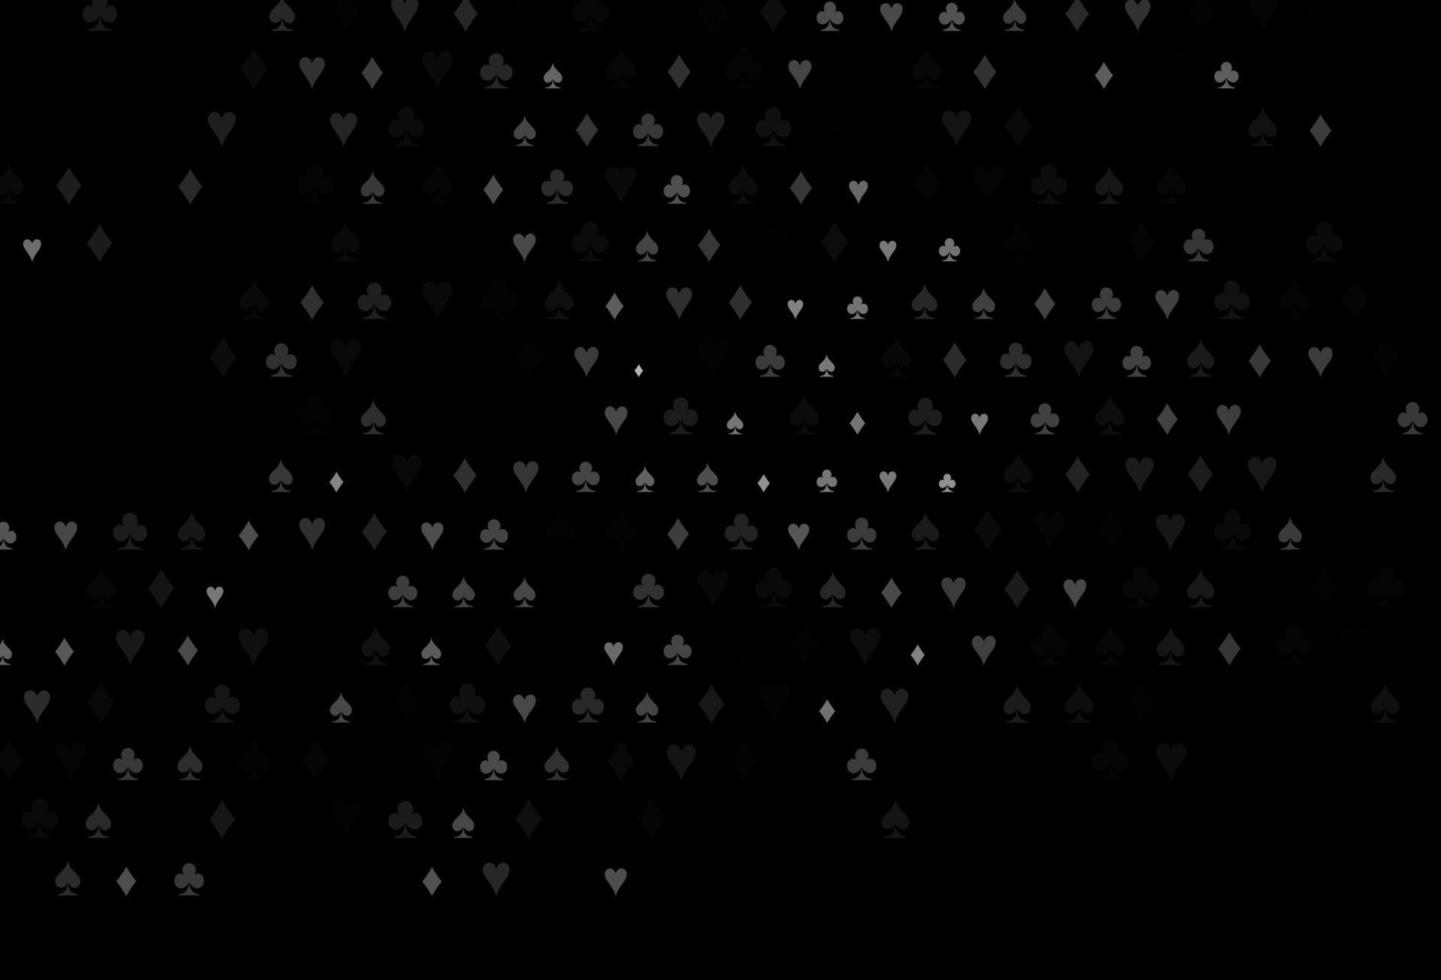 Patrón de vector gris plateado oscuro con símbolo de tarjetas.